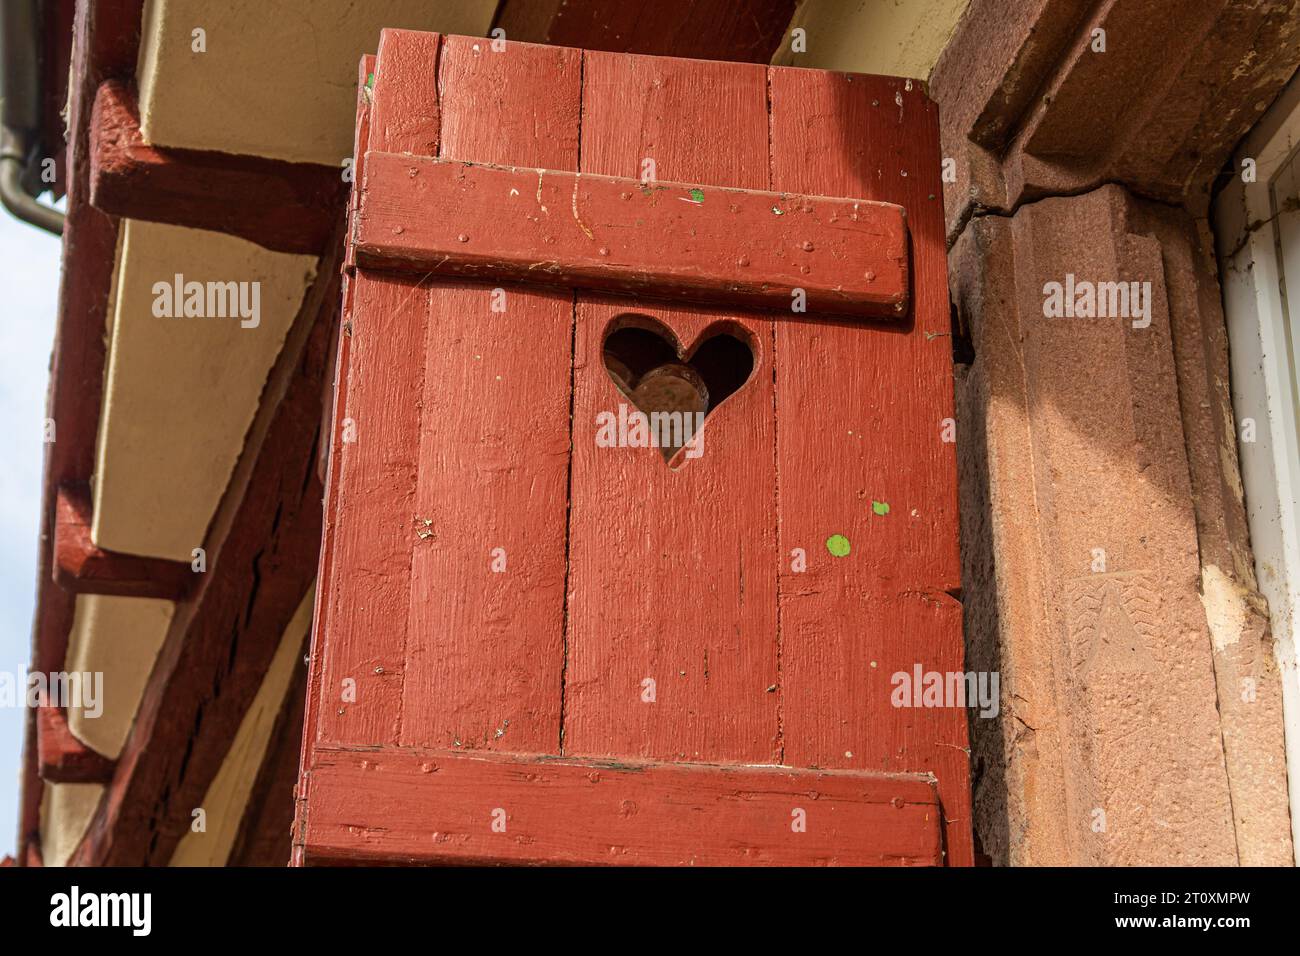 détail de vieux volet en bois rouge avec trou en forme de coeur sur maison à colombages dans une petite ville dans le sud de l'allemagne Banque D'Images